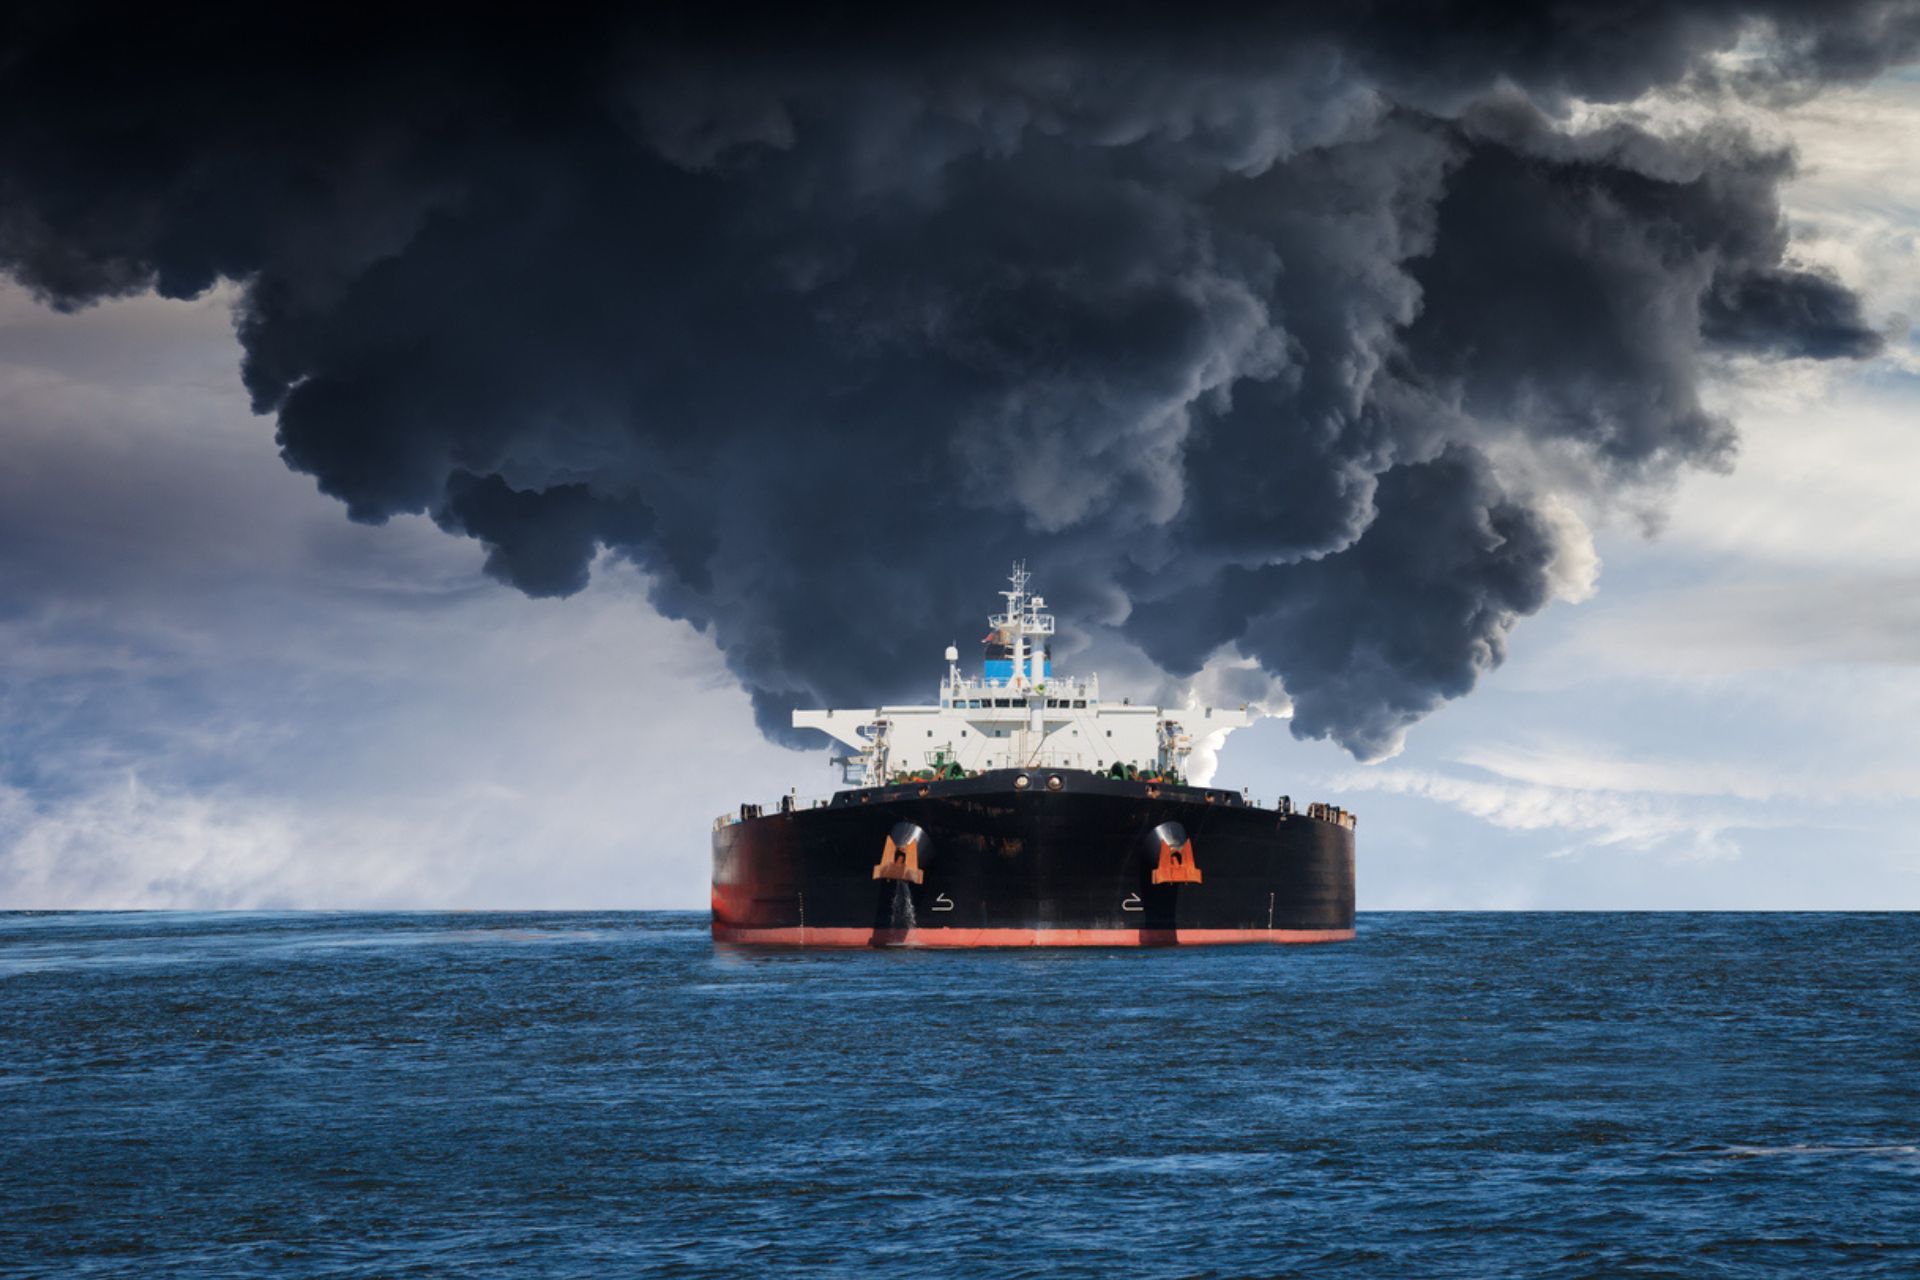 Umweltverschmutzung: Brennender Öltanker auf See